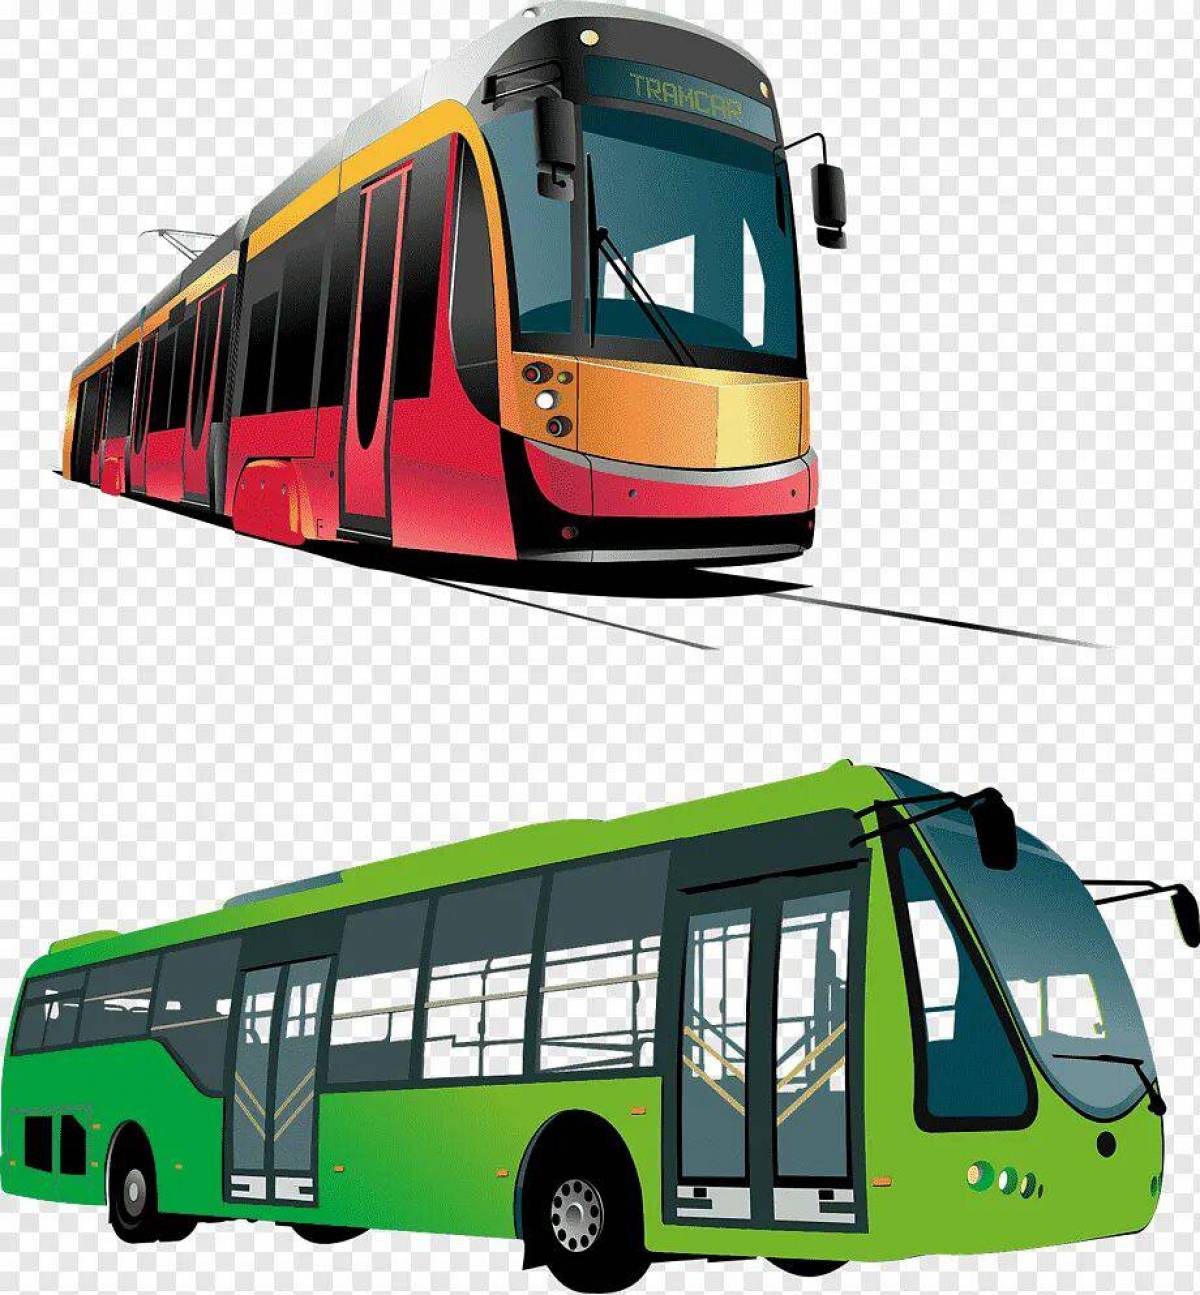 Автобус троллейбус трамвай маршрутные. Транспорт трамвай. Трамвай и троллейбус. Трамвай на белом фоне. Трамвай для дошкольников.